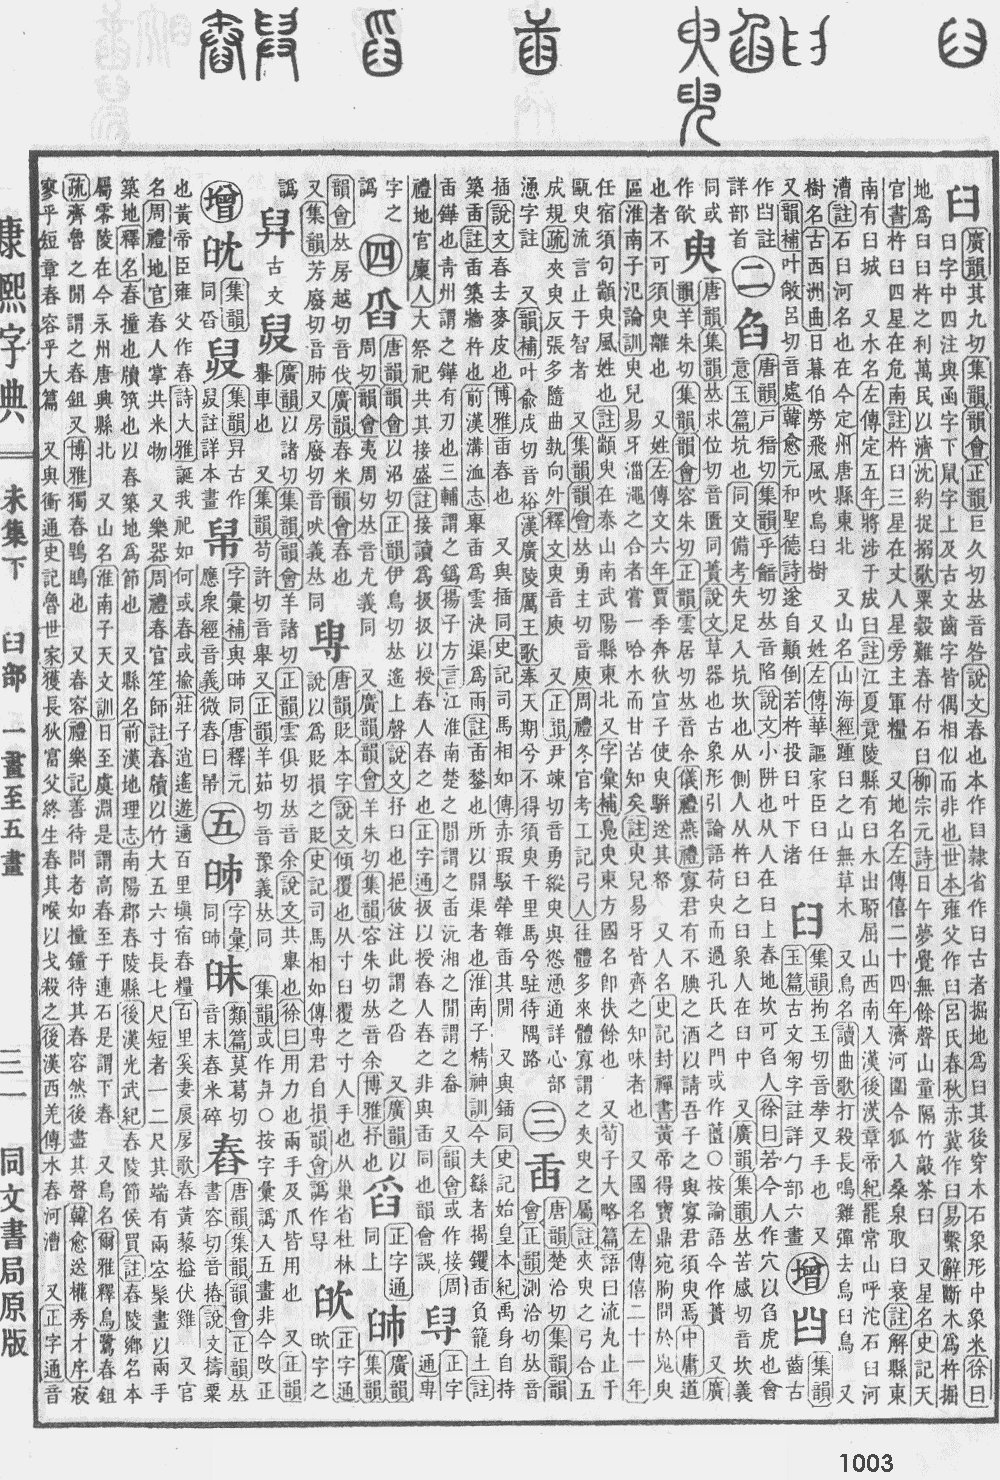 康熙字典第1003页图片